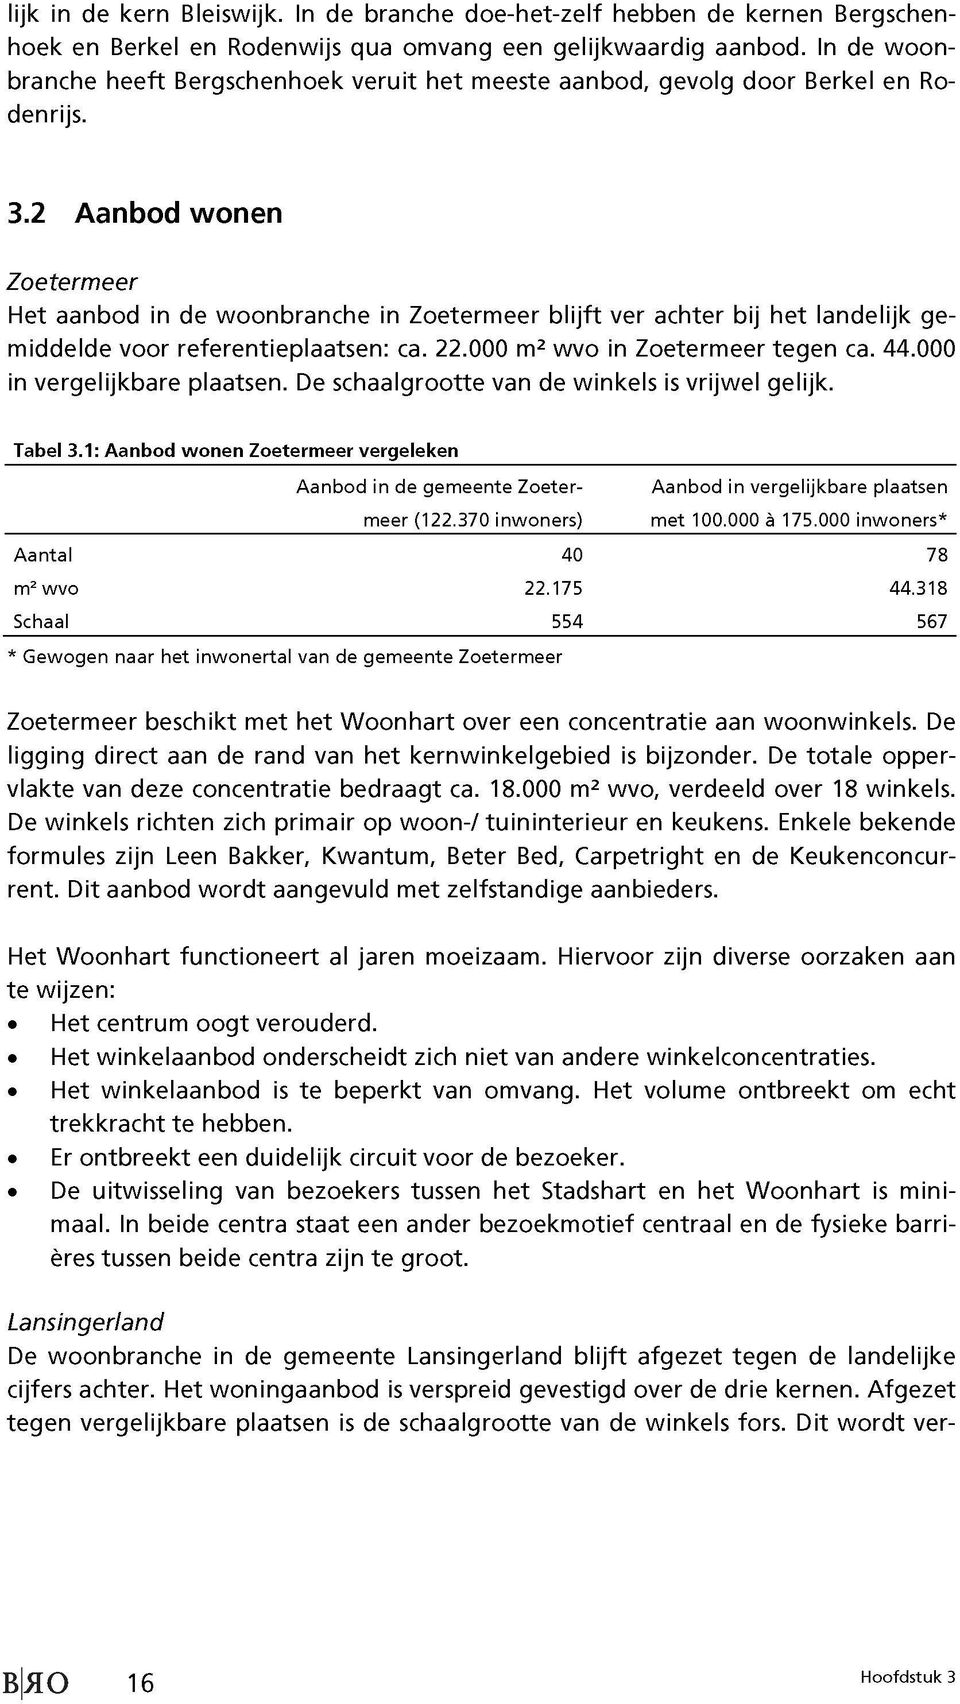 2 Aanbod wonen Zoetermeer Het aanbod in de woonbranche in Zoetermeer blijft ver achter bij het landelijk ge middelde voor referentieplaatsen: ca. 22.000 m2 wvo in Zoetermeer tegen ca. 44.